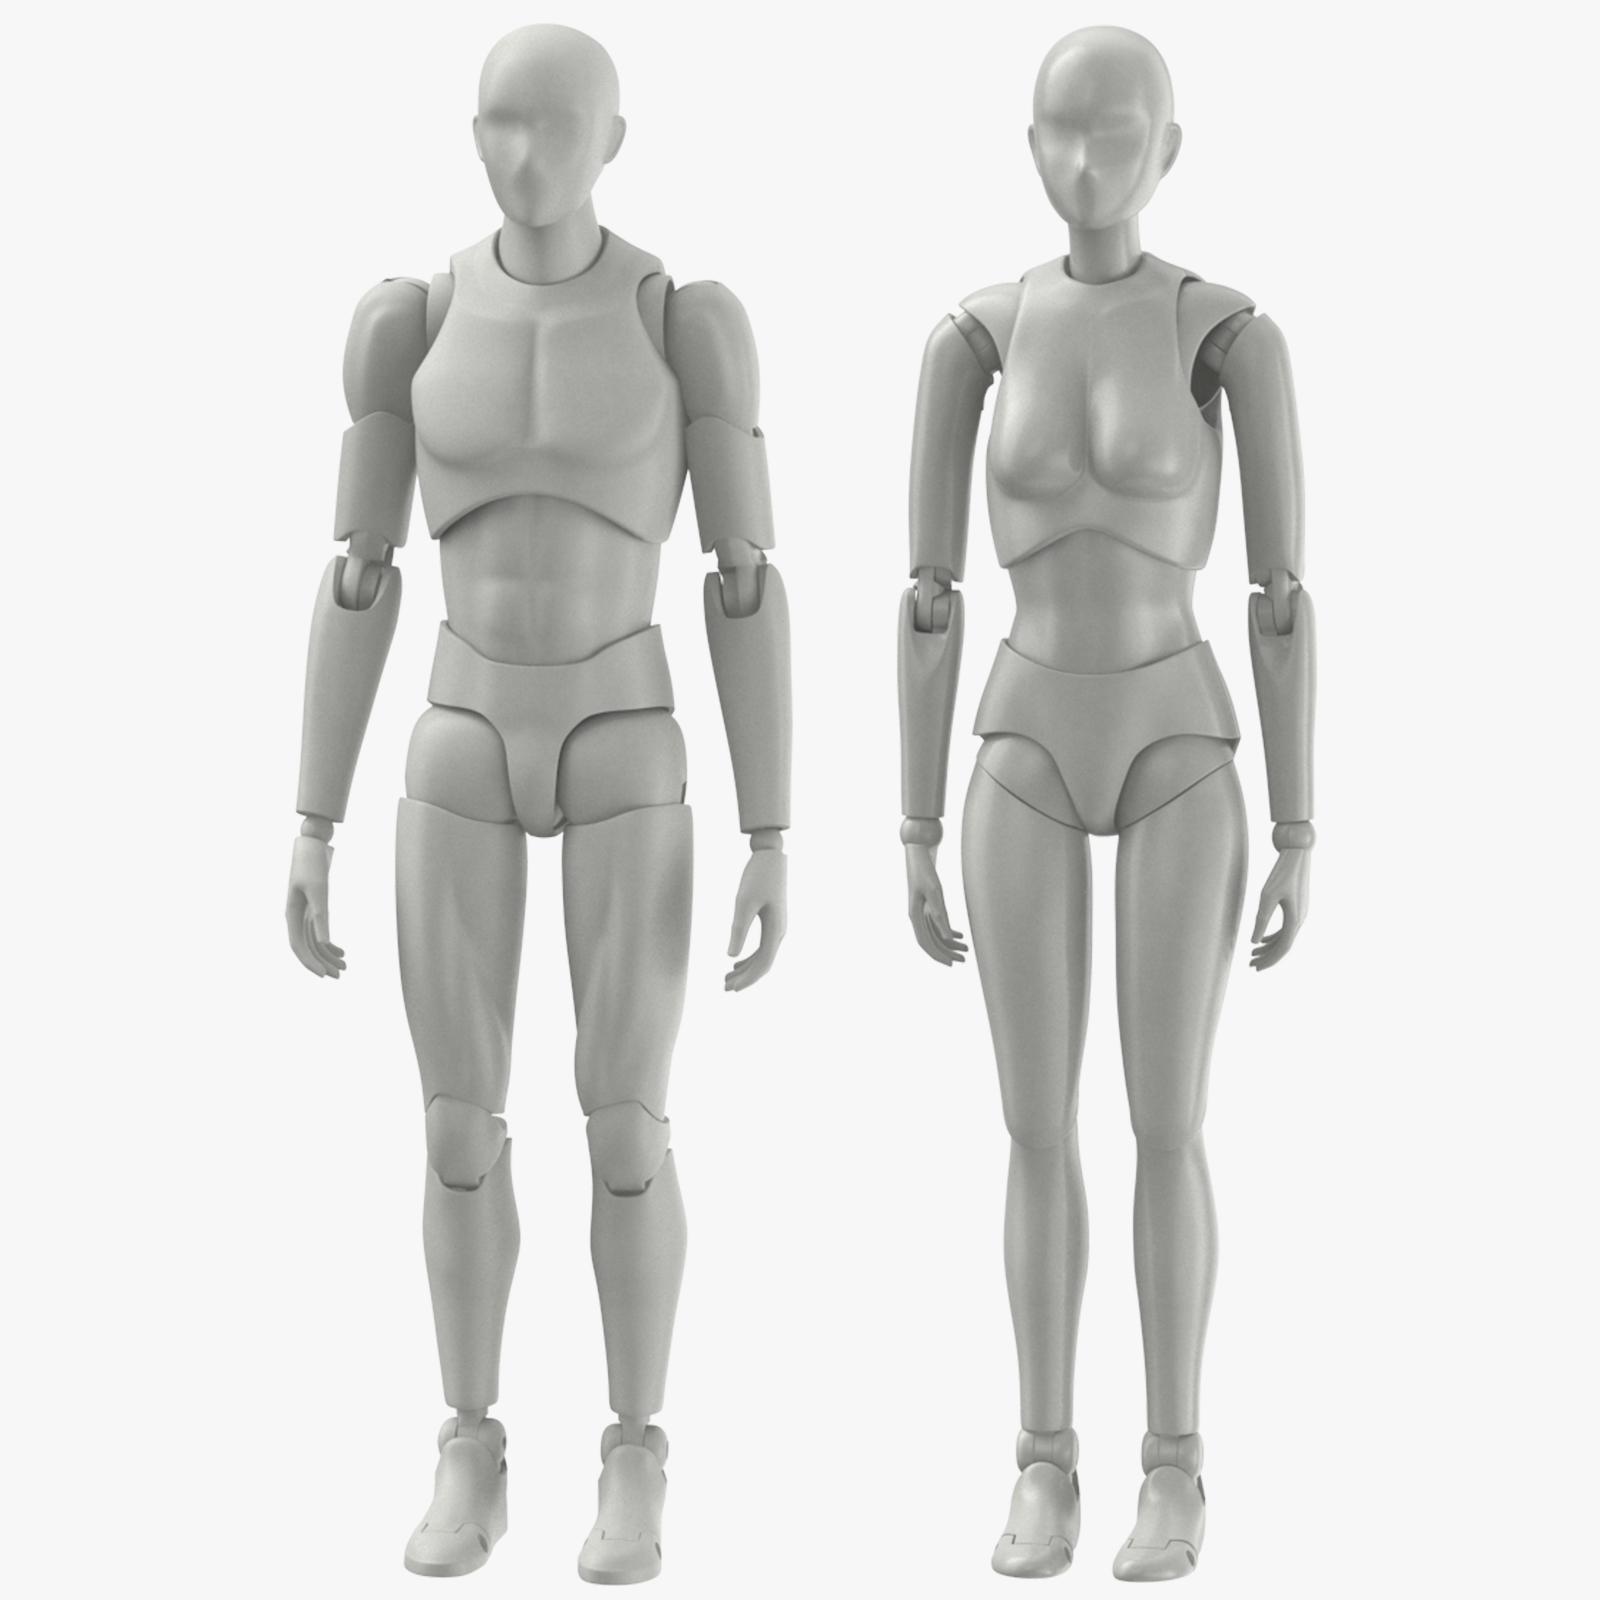 male female mannequins 3D model https://static.turbosquid.com/Preview/001244/807/6X/male-female-mannequins-3D-model_D.jpg